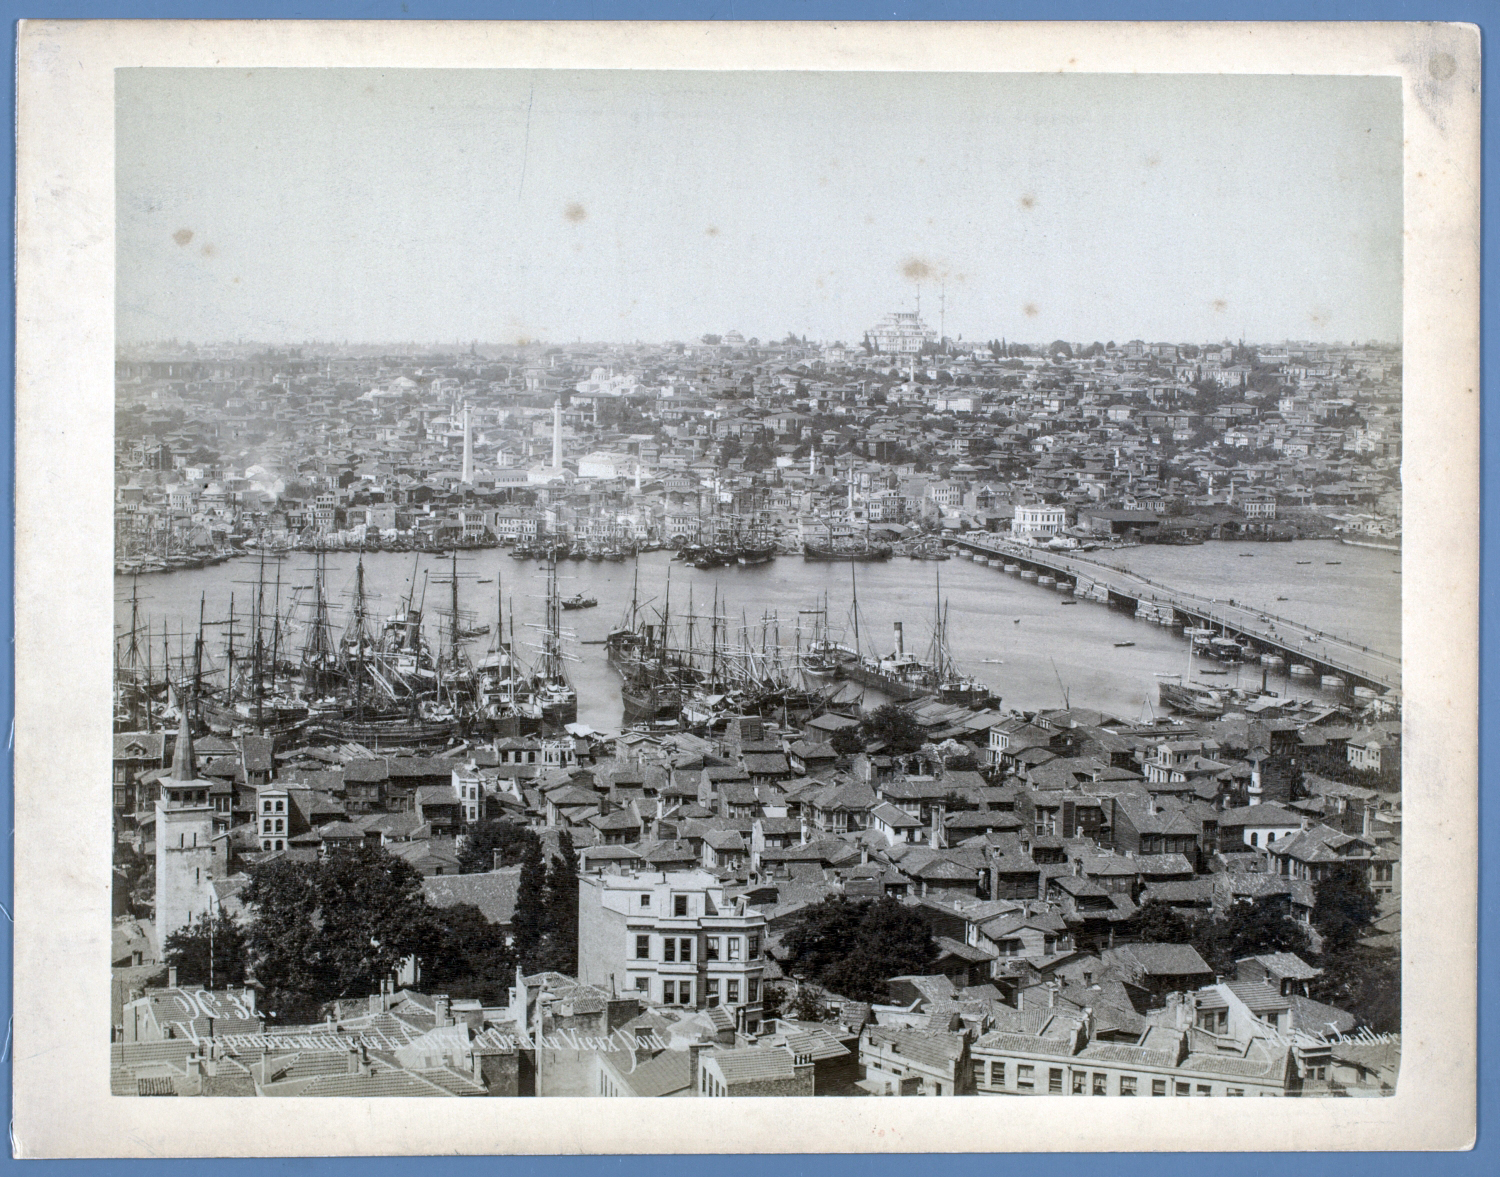  Istanbul - Bird's-eye view of the Golden Horn and the Old Bridge (Cisr-i Atik). "N. 32. Vue panoramique de la Corne d'Or et du Vieux Pont."